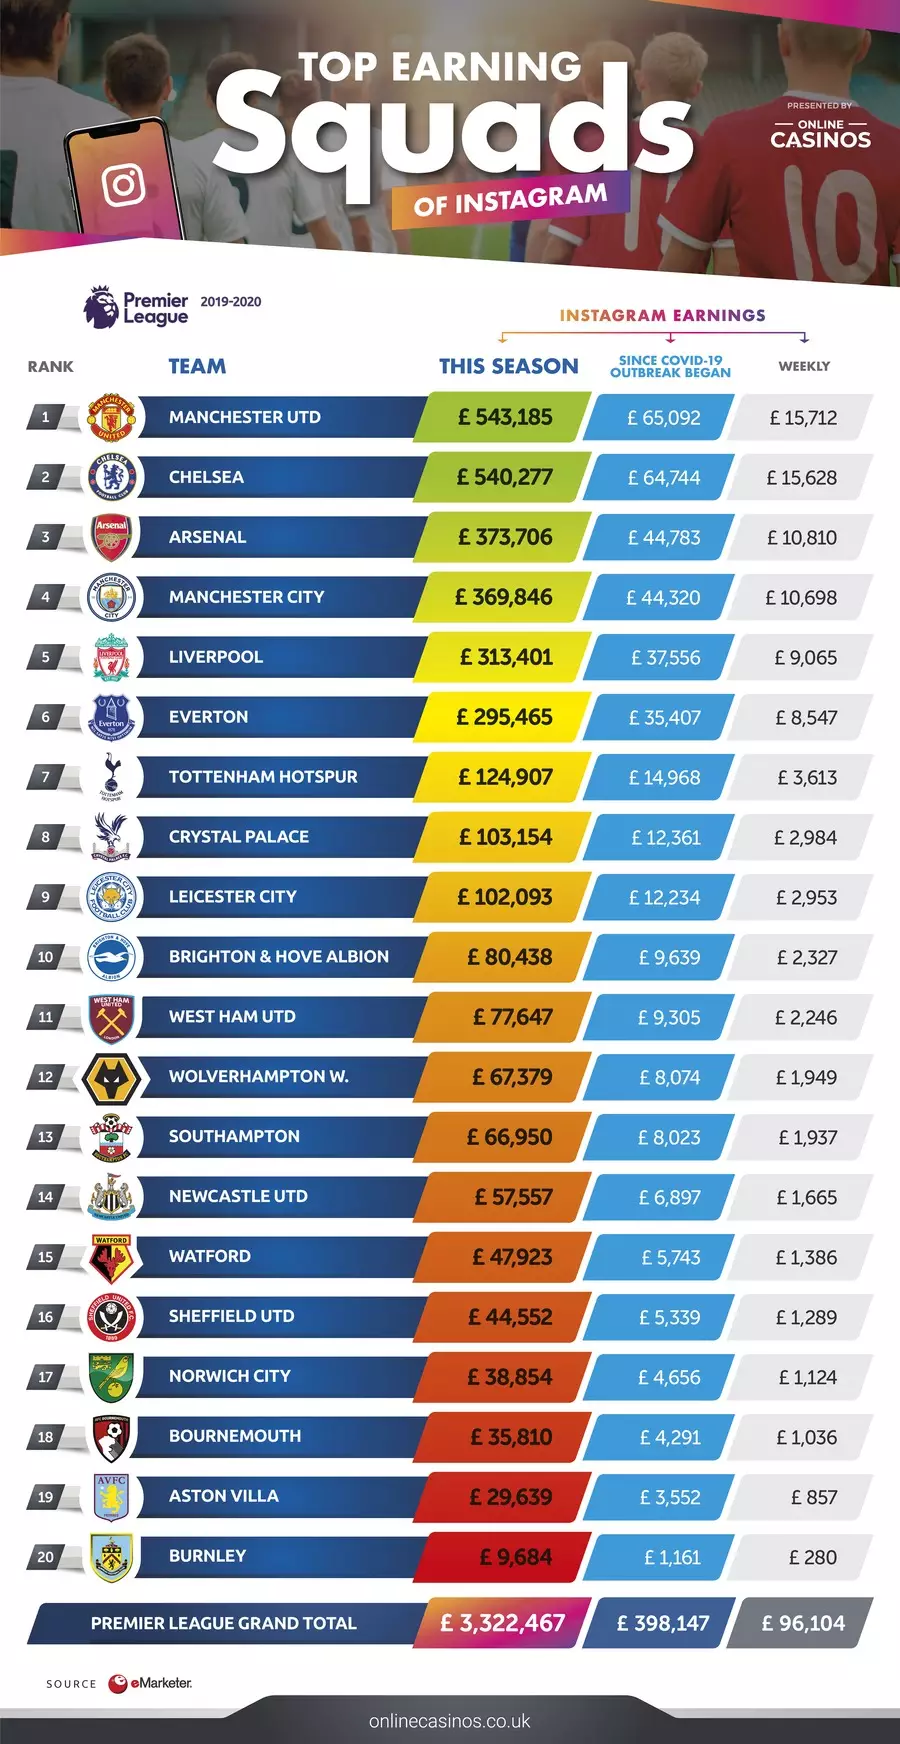 Premier League clubs by Instagram value. Image: CasinosOnline